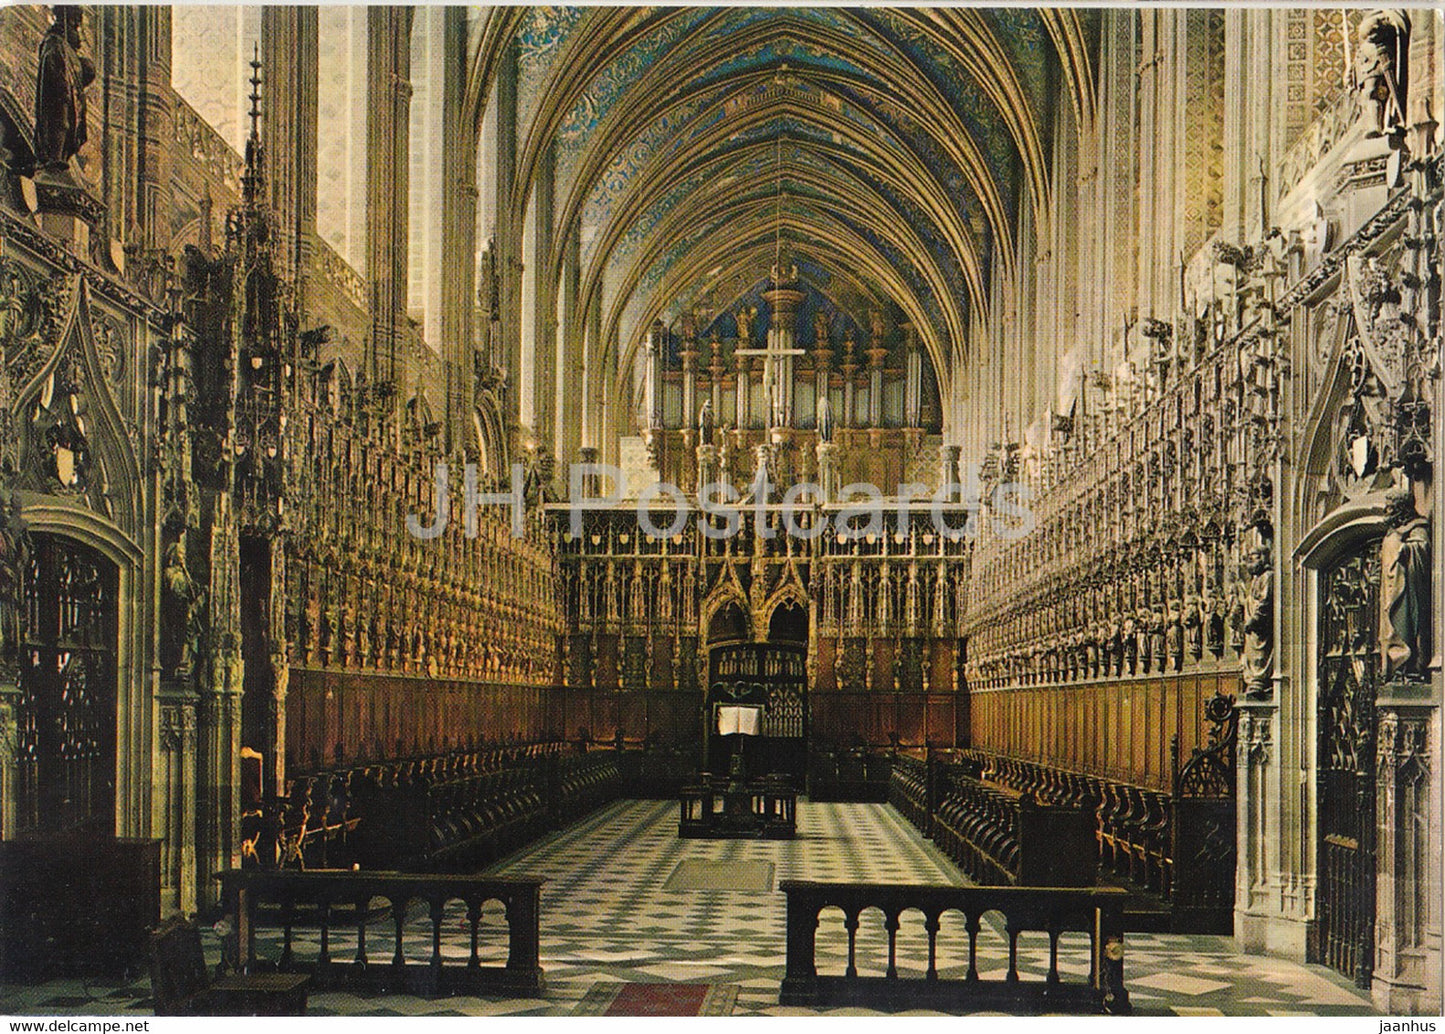 Albi - interieur de la Basilique Sainte Cecile - Le Choeur - cathedral - France - unused - JH Postcards